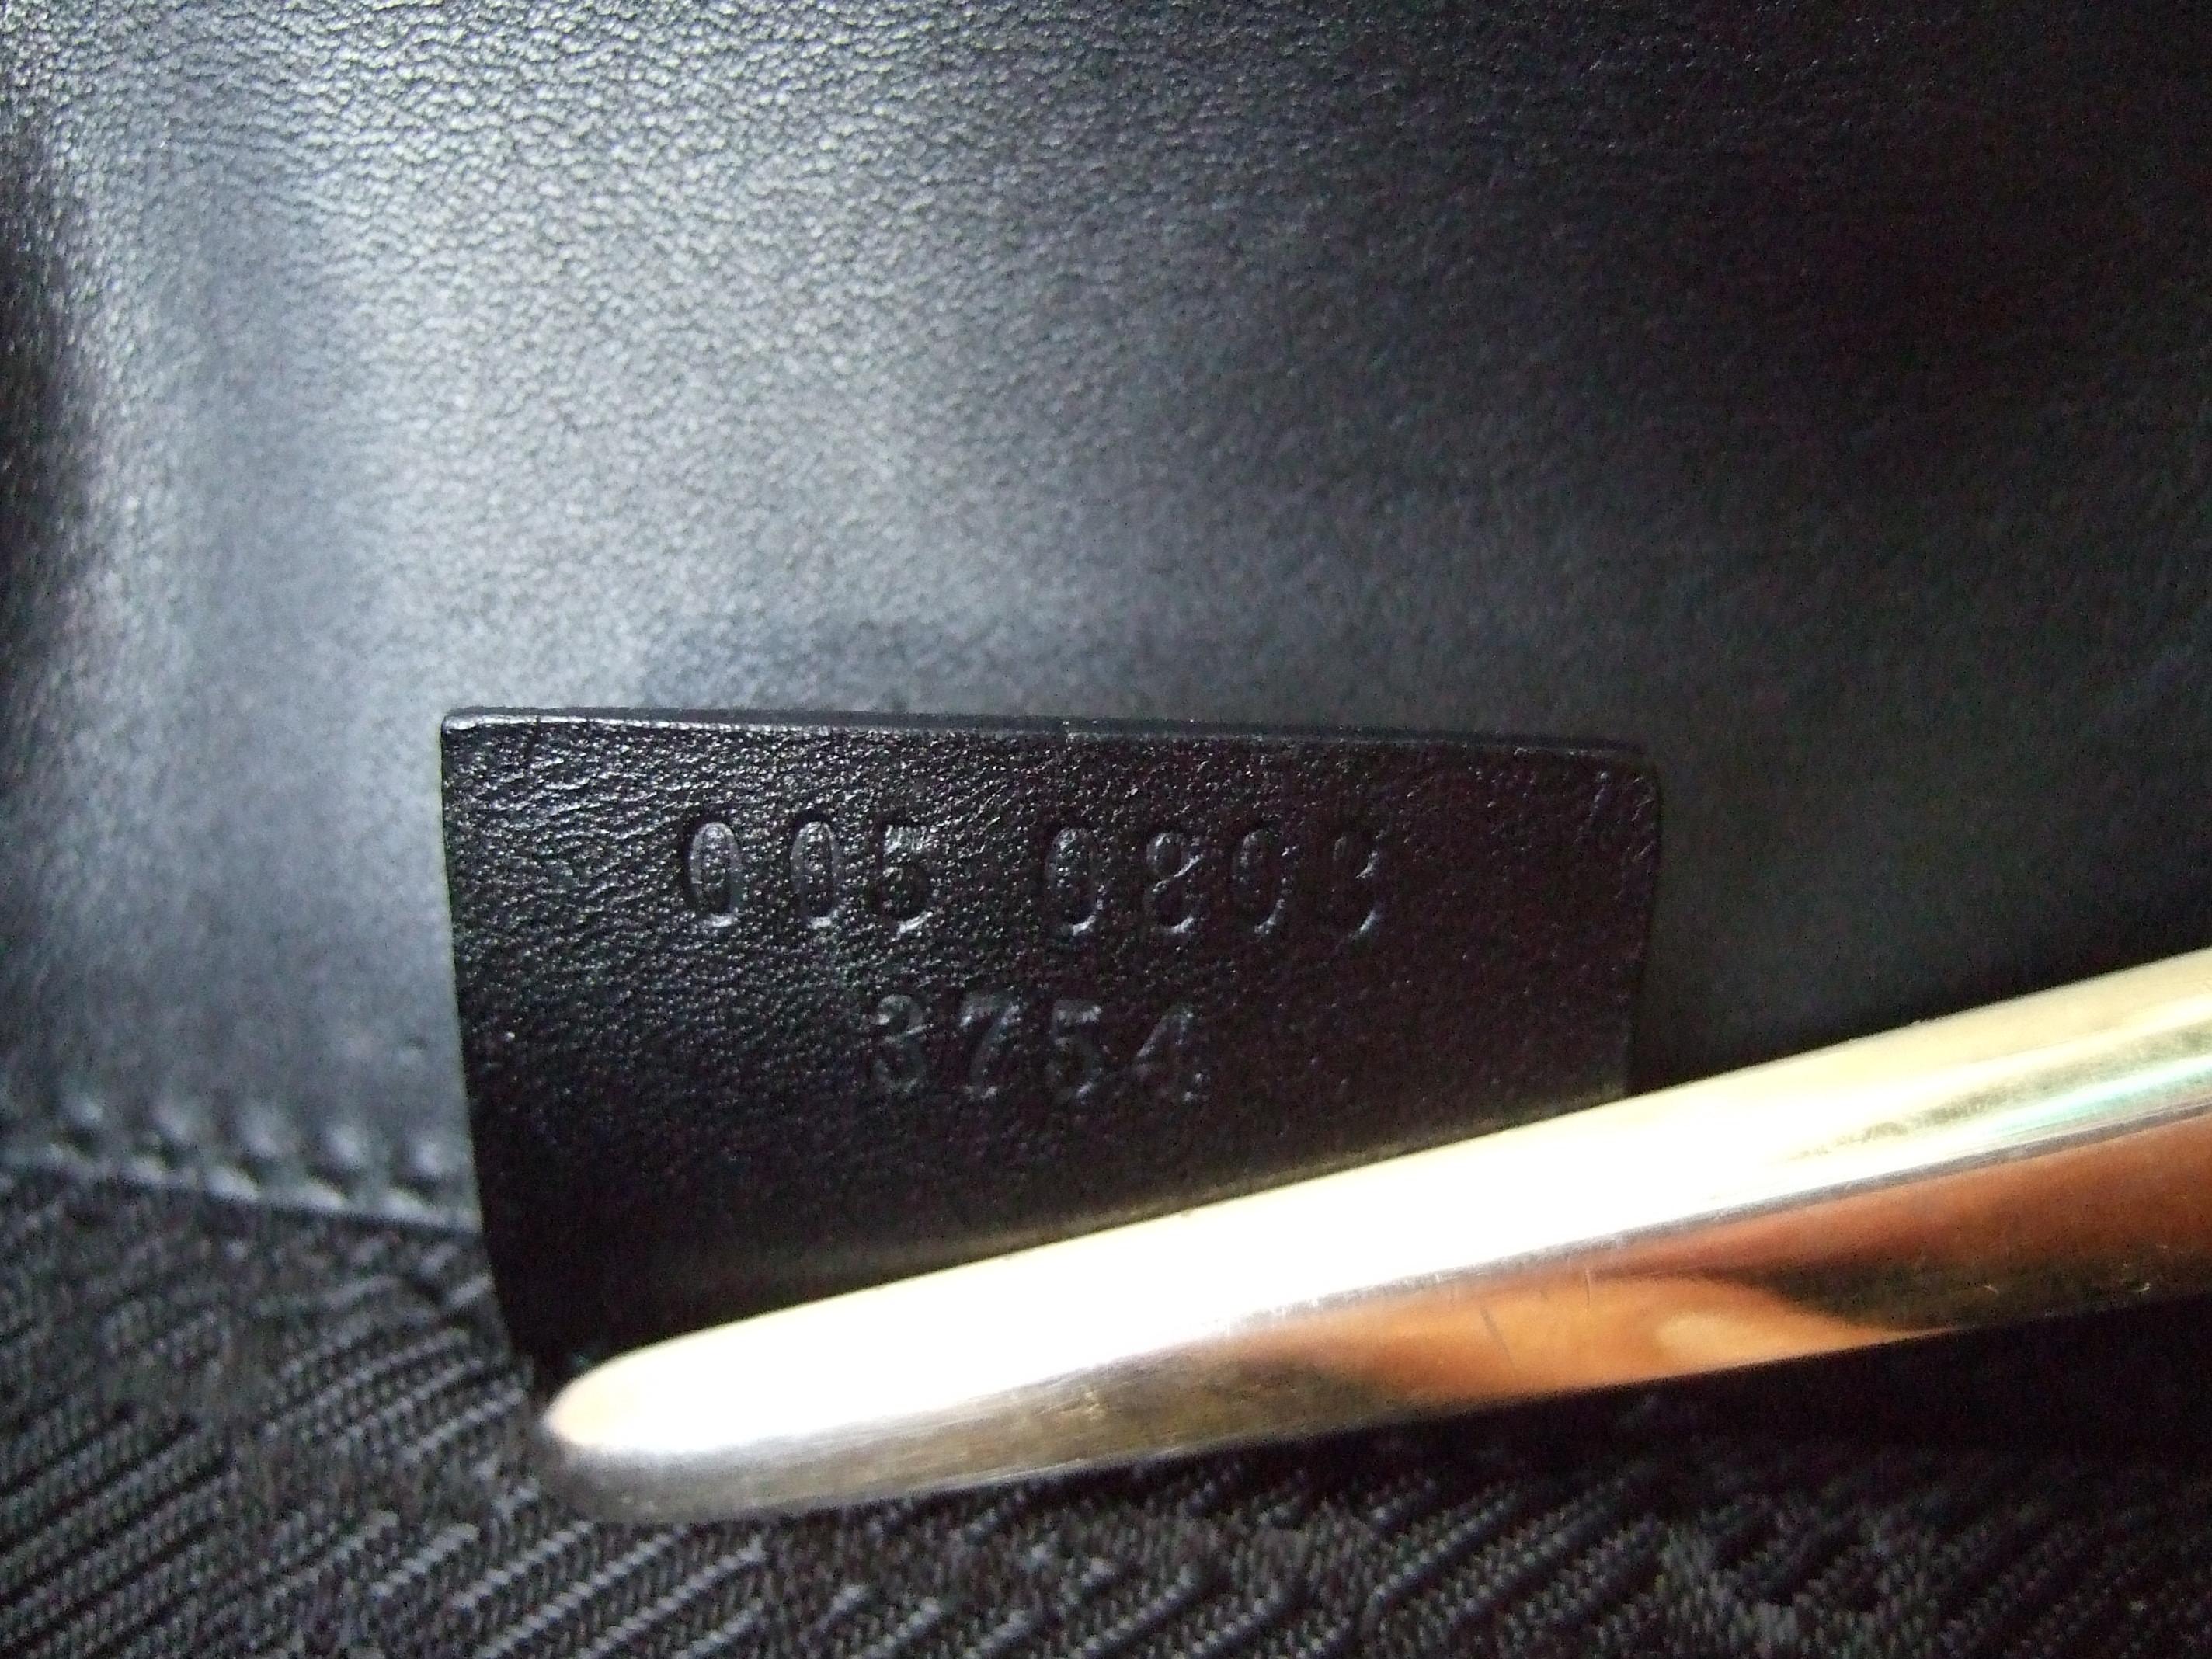 Gucci Italy Rare Black Suede Tiger Emblem Handbag Tom Ford Era c 2000 13